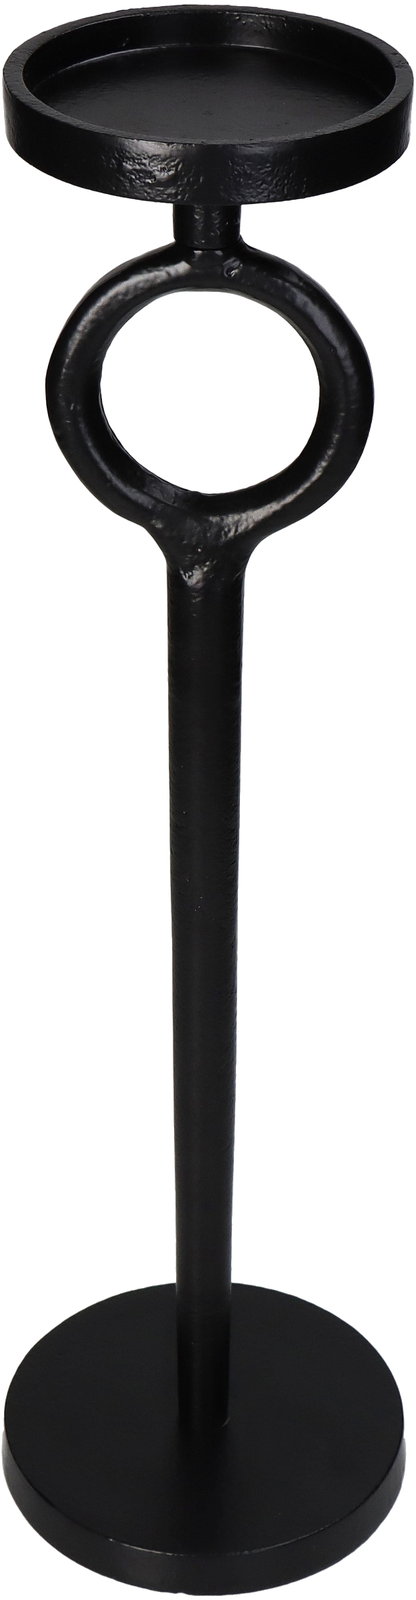 Candle Holder Aluminium Black 11.5x11.5x36.5cm